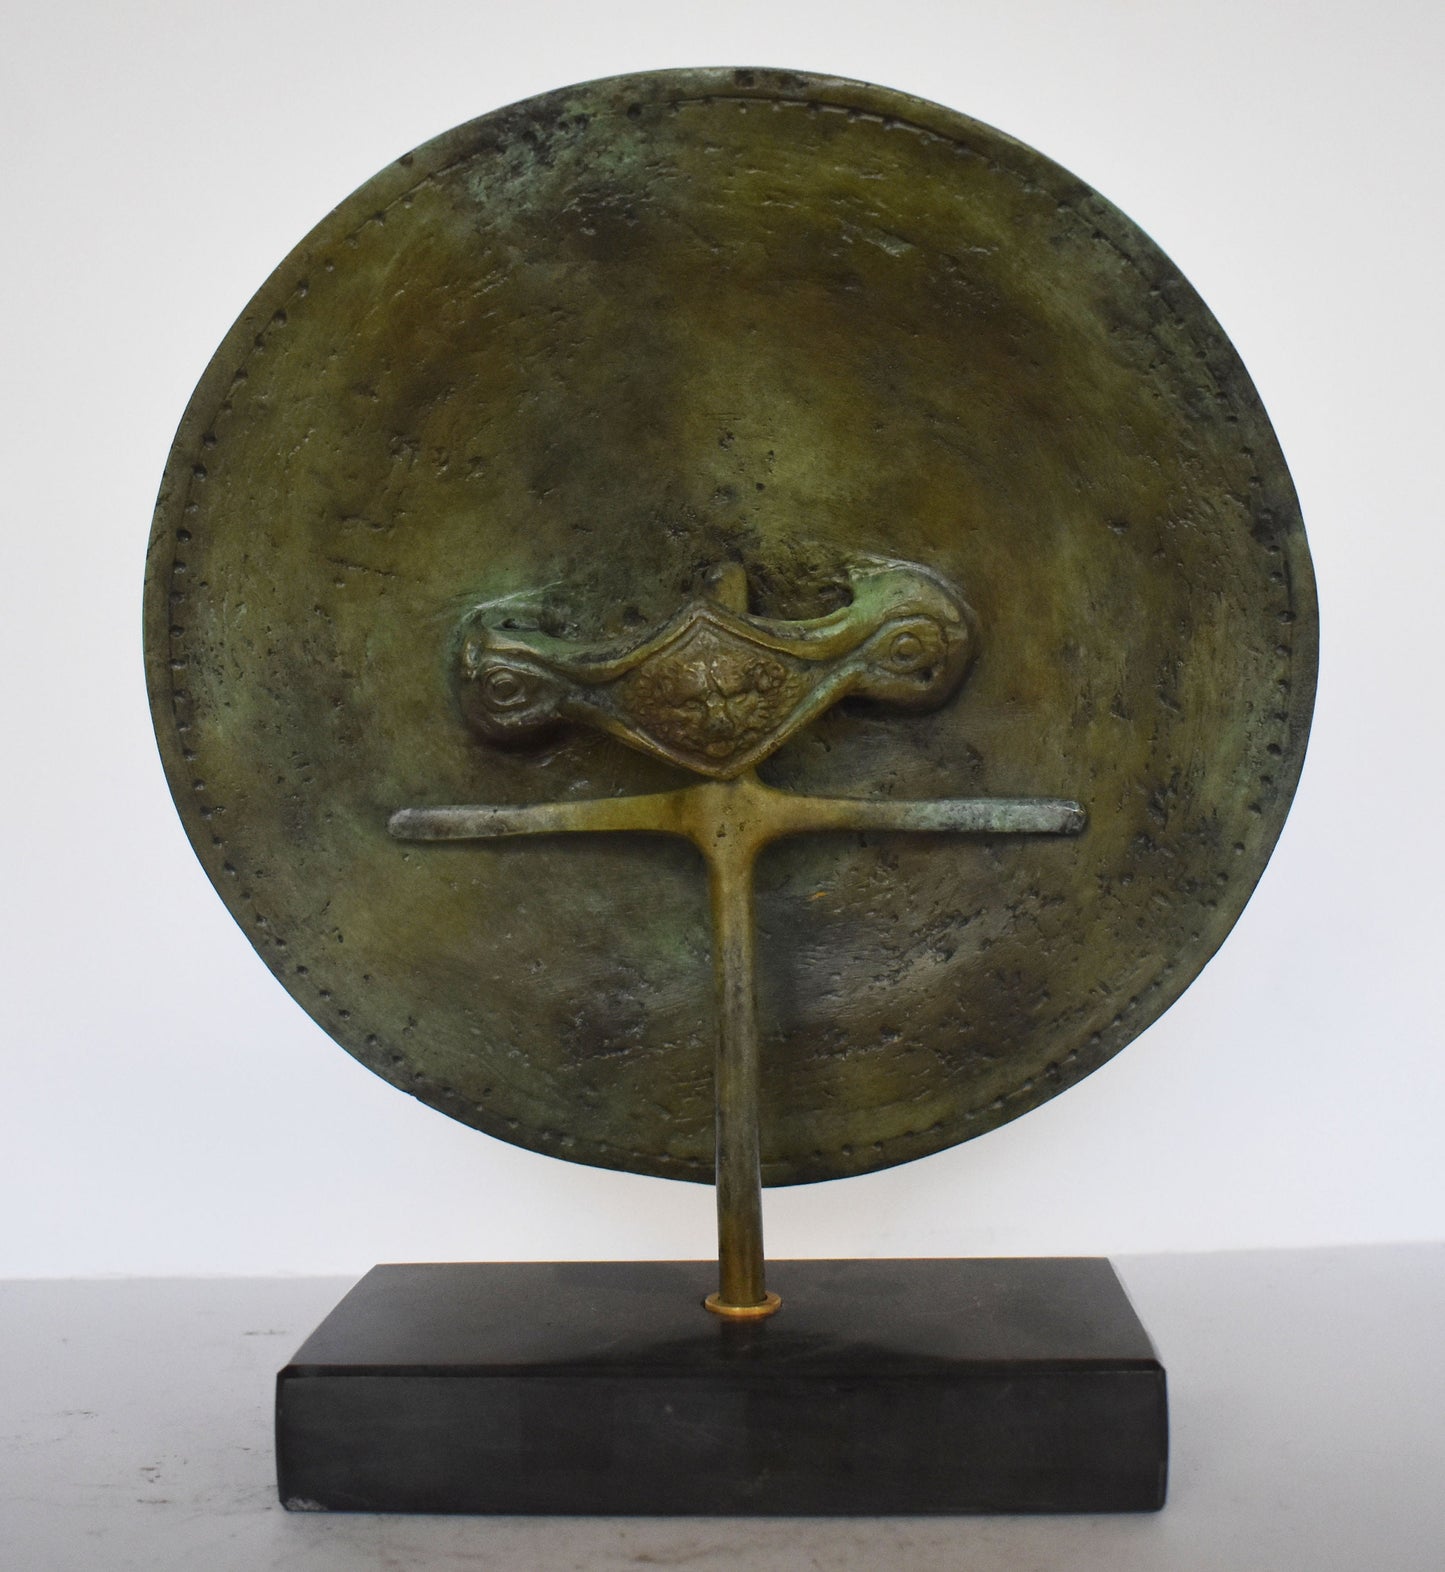 Ancient Greek Medusa Shield - marble base - Museum Reproduction - pure Bronze Sculpture